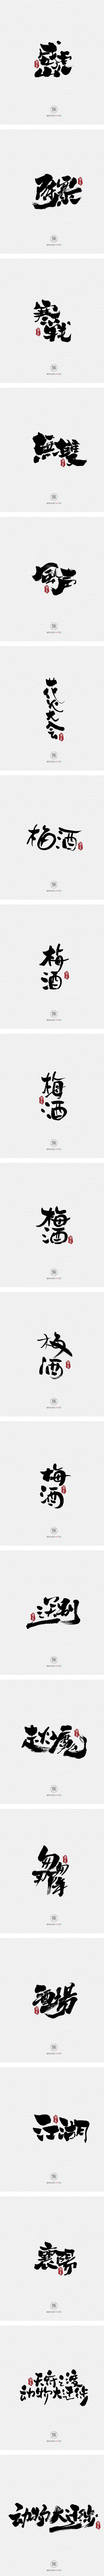 11.22一组手写字-字体传奇网-中国首...